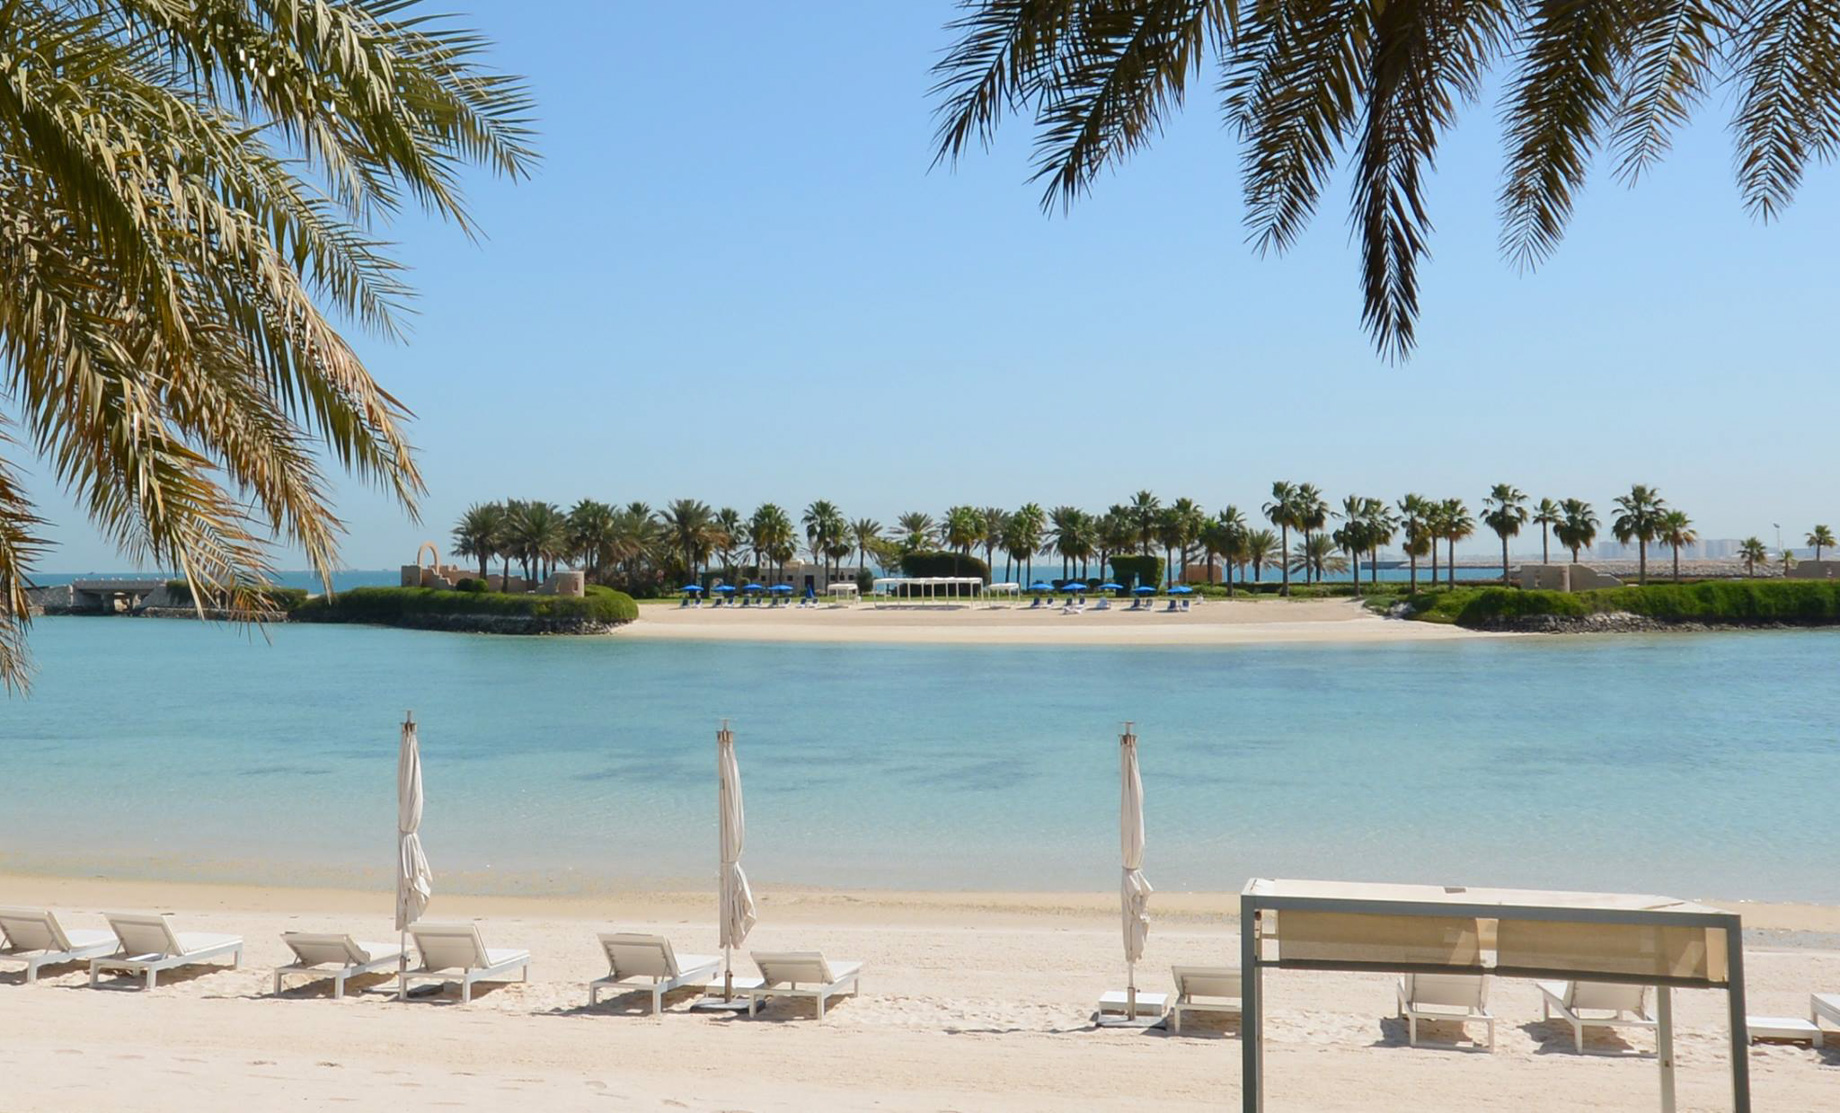 The Ritz-Carlton, Bahrain Resort Hotel – Manama, Bahrain – Private Beach View